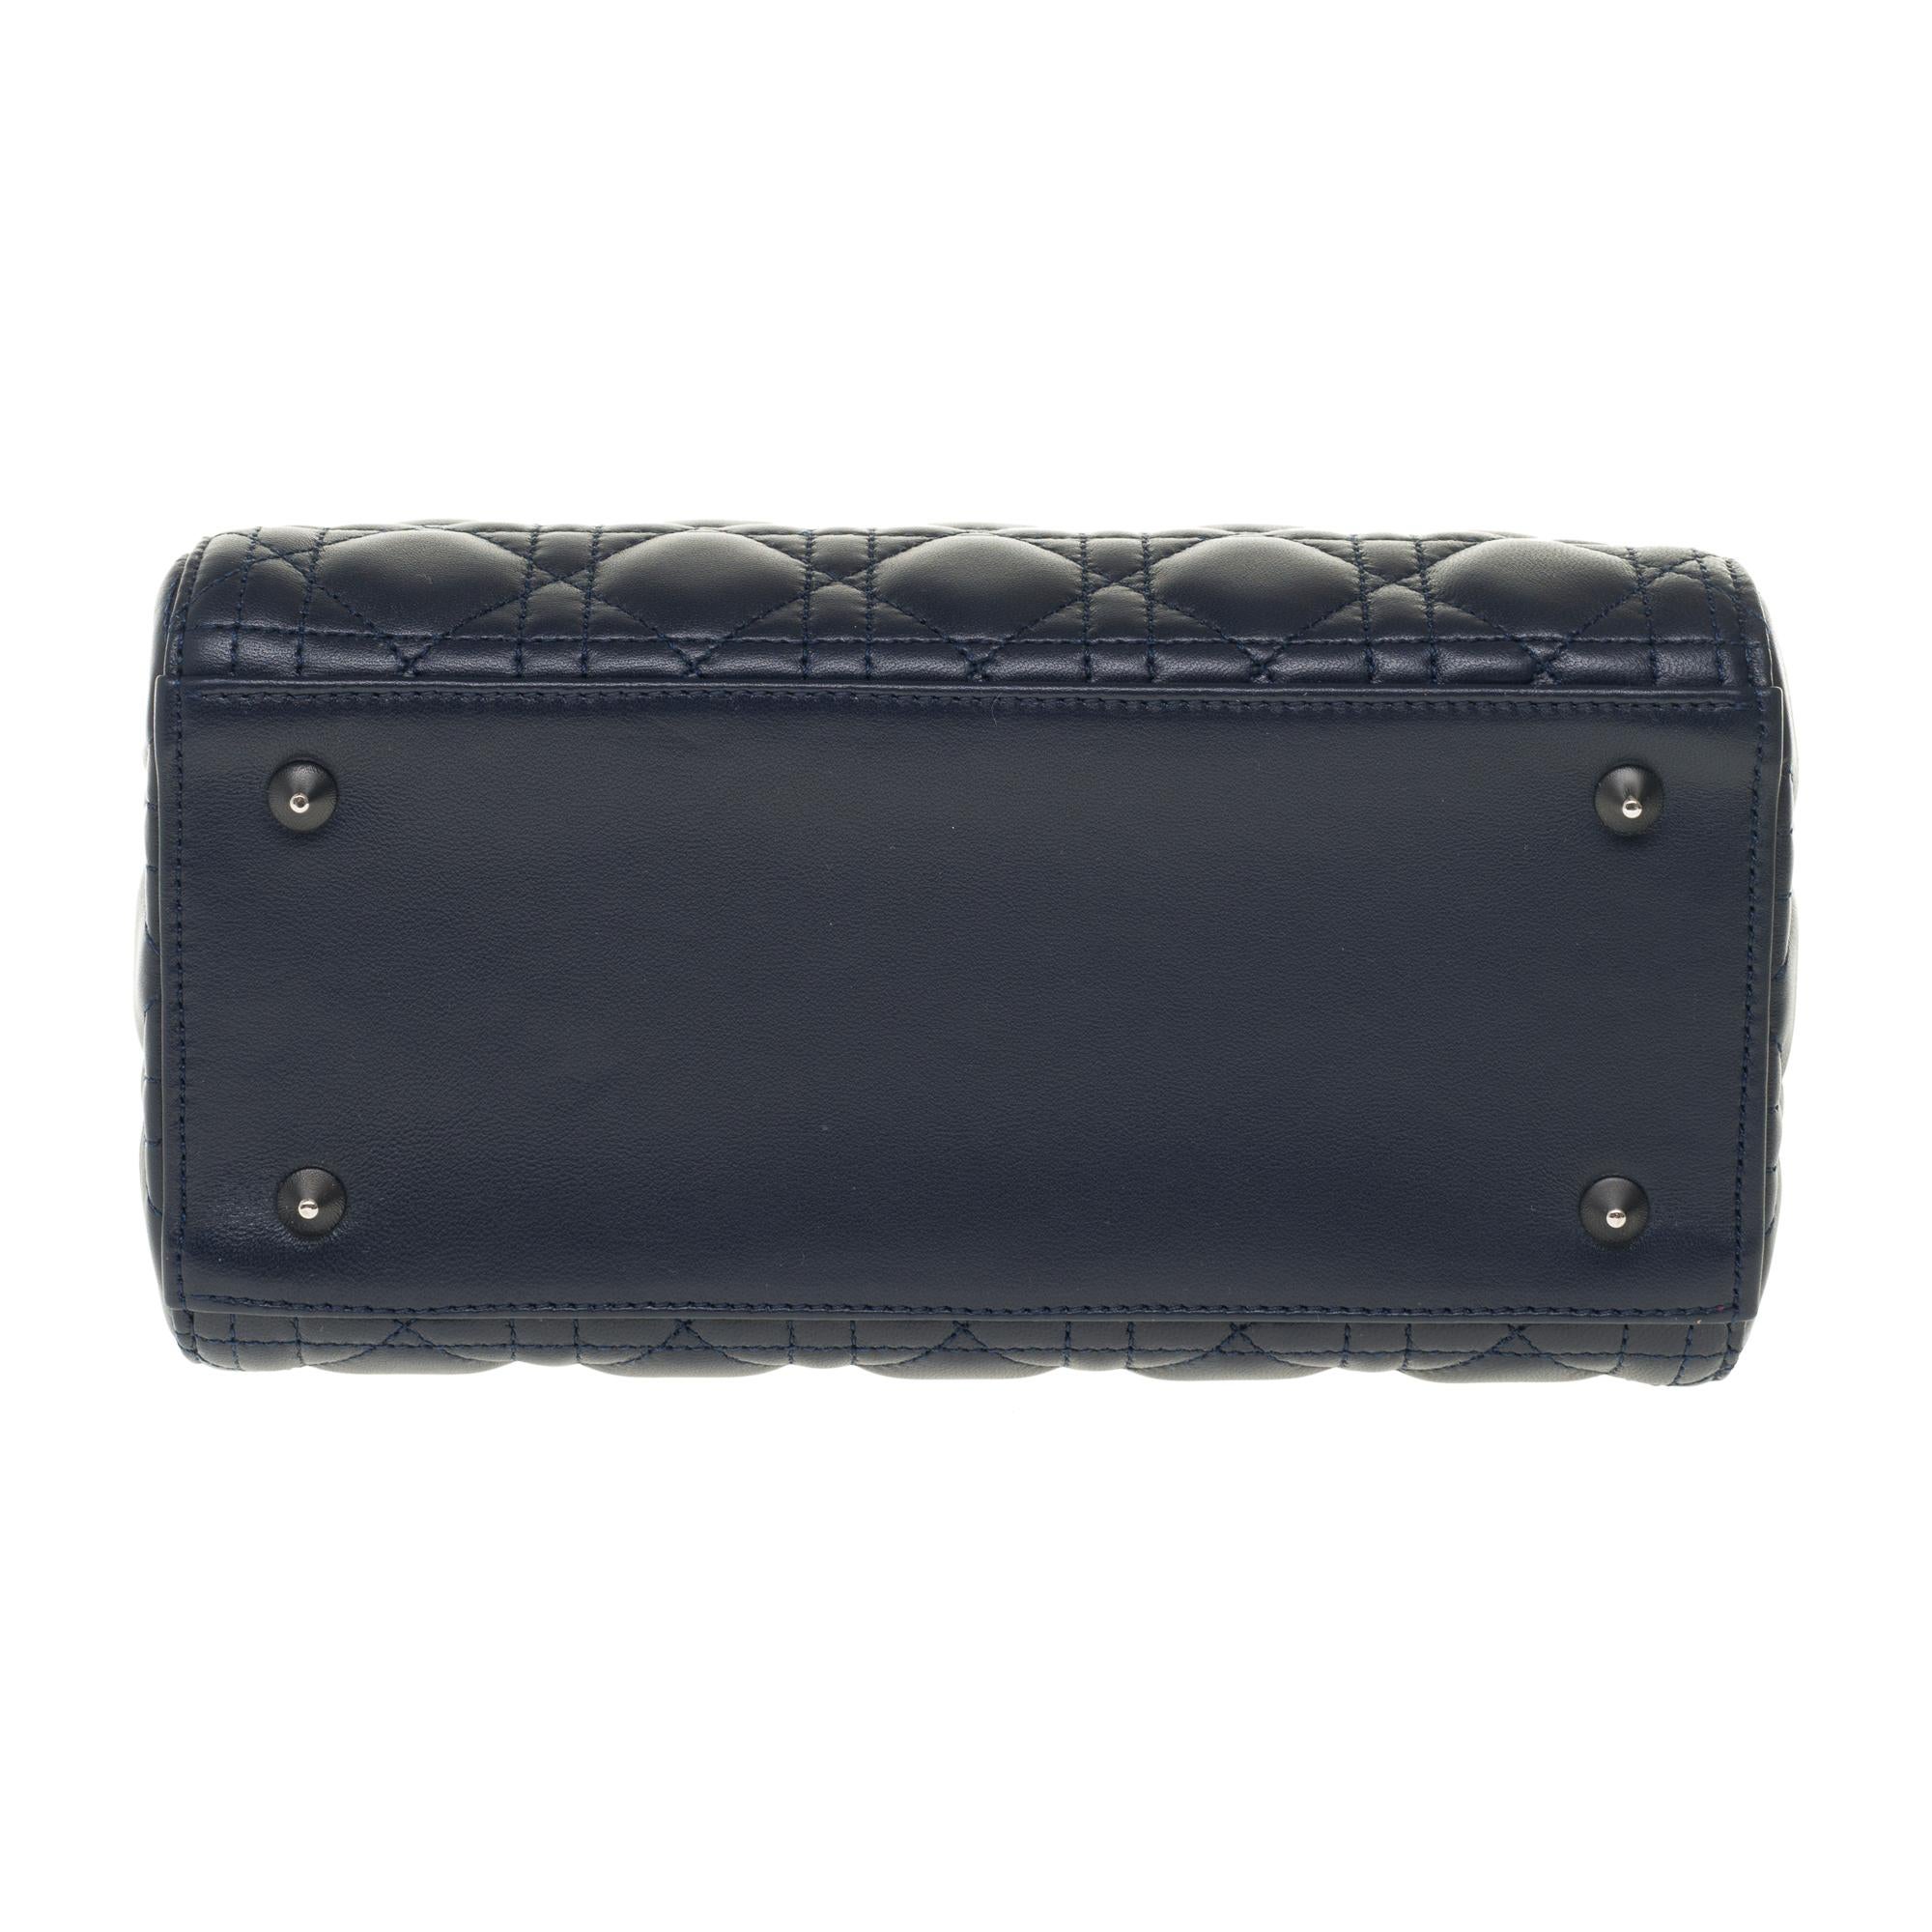  Christian Dior Lady Dior MM (Medium size) handbag in black cannage leather, SHW 4